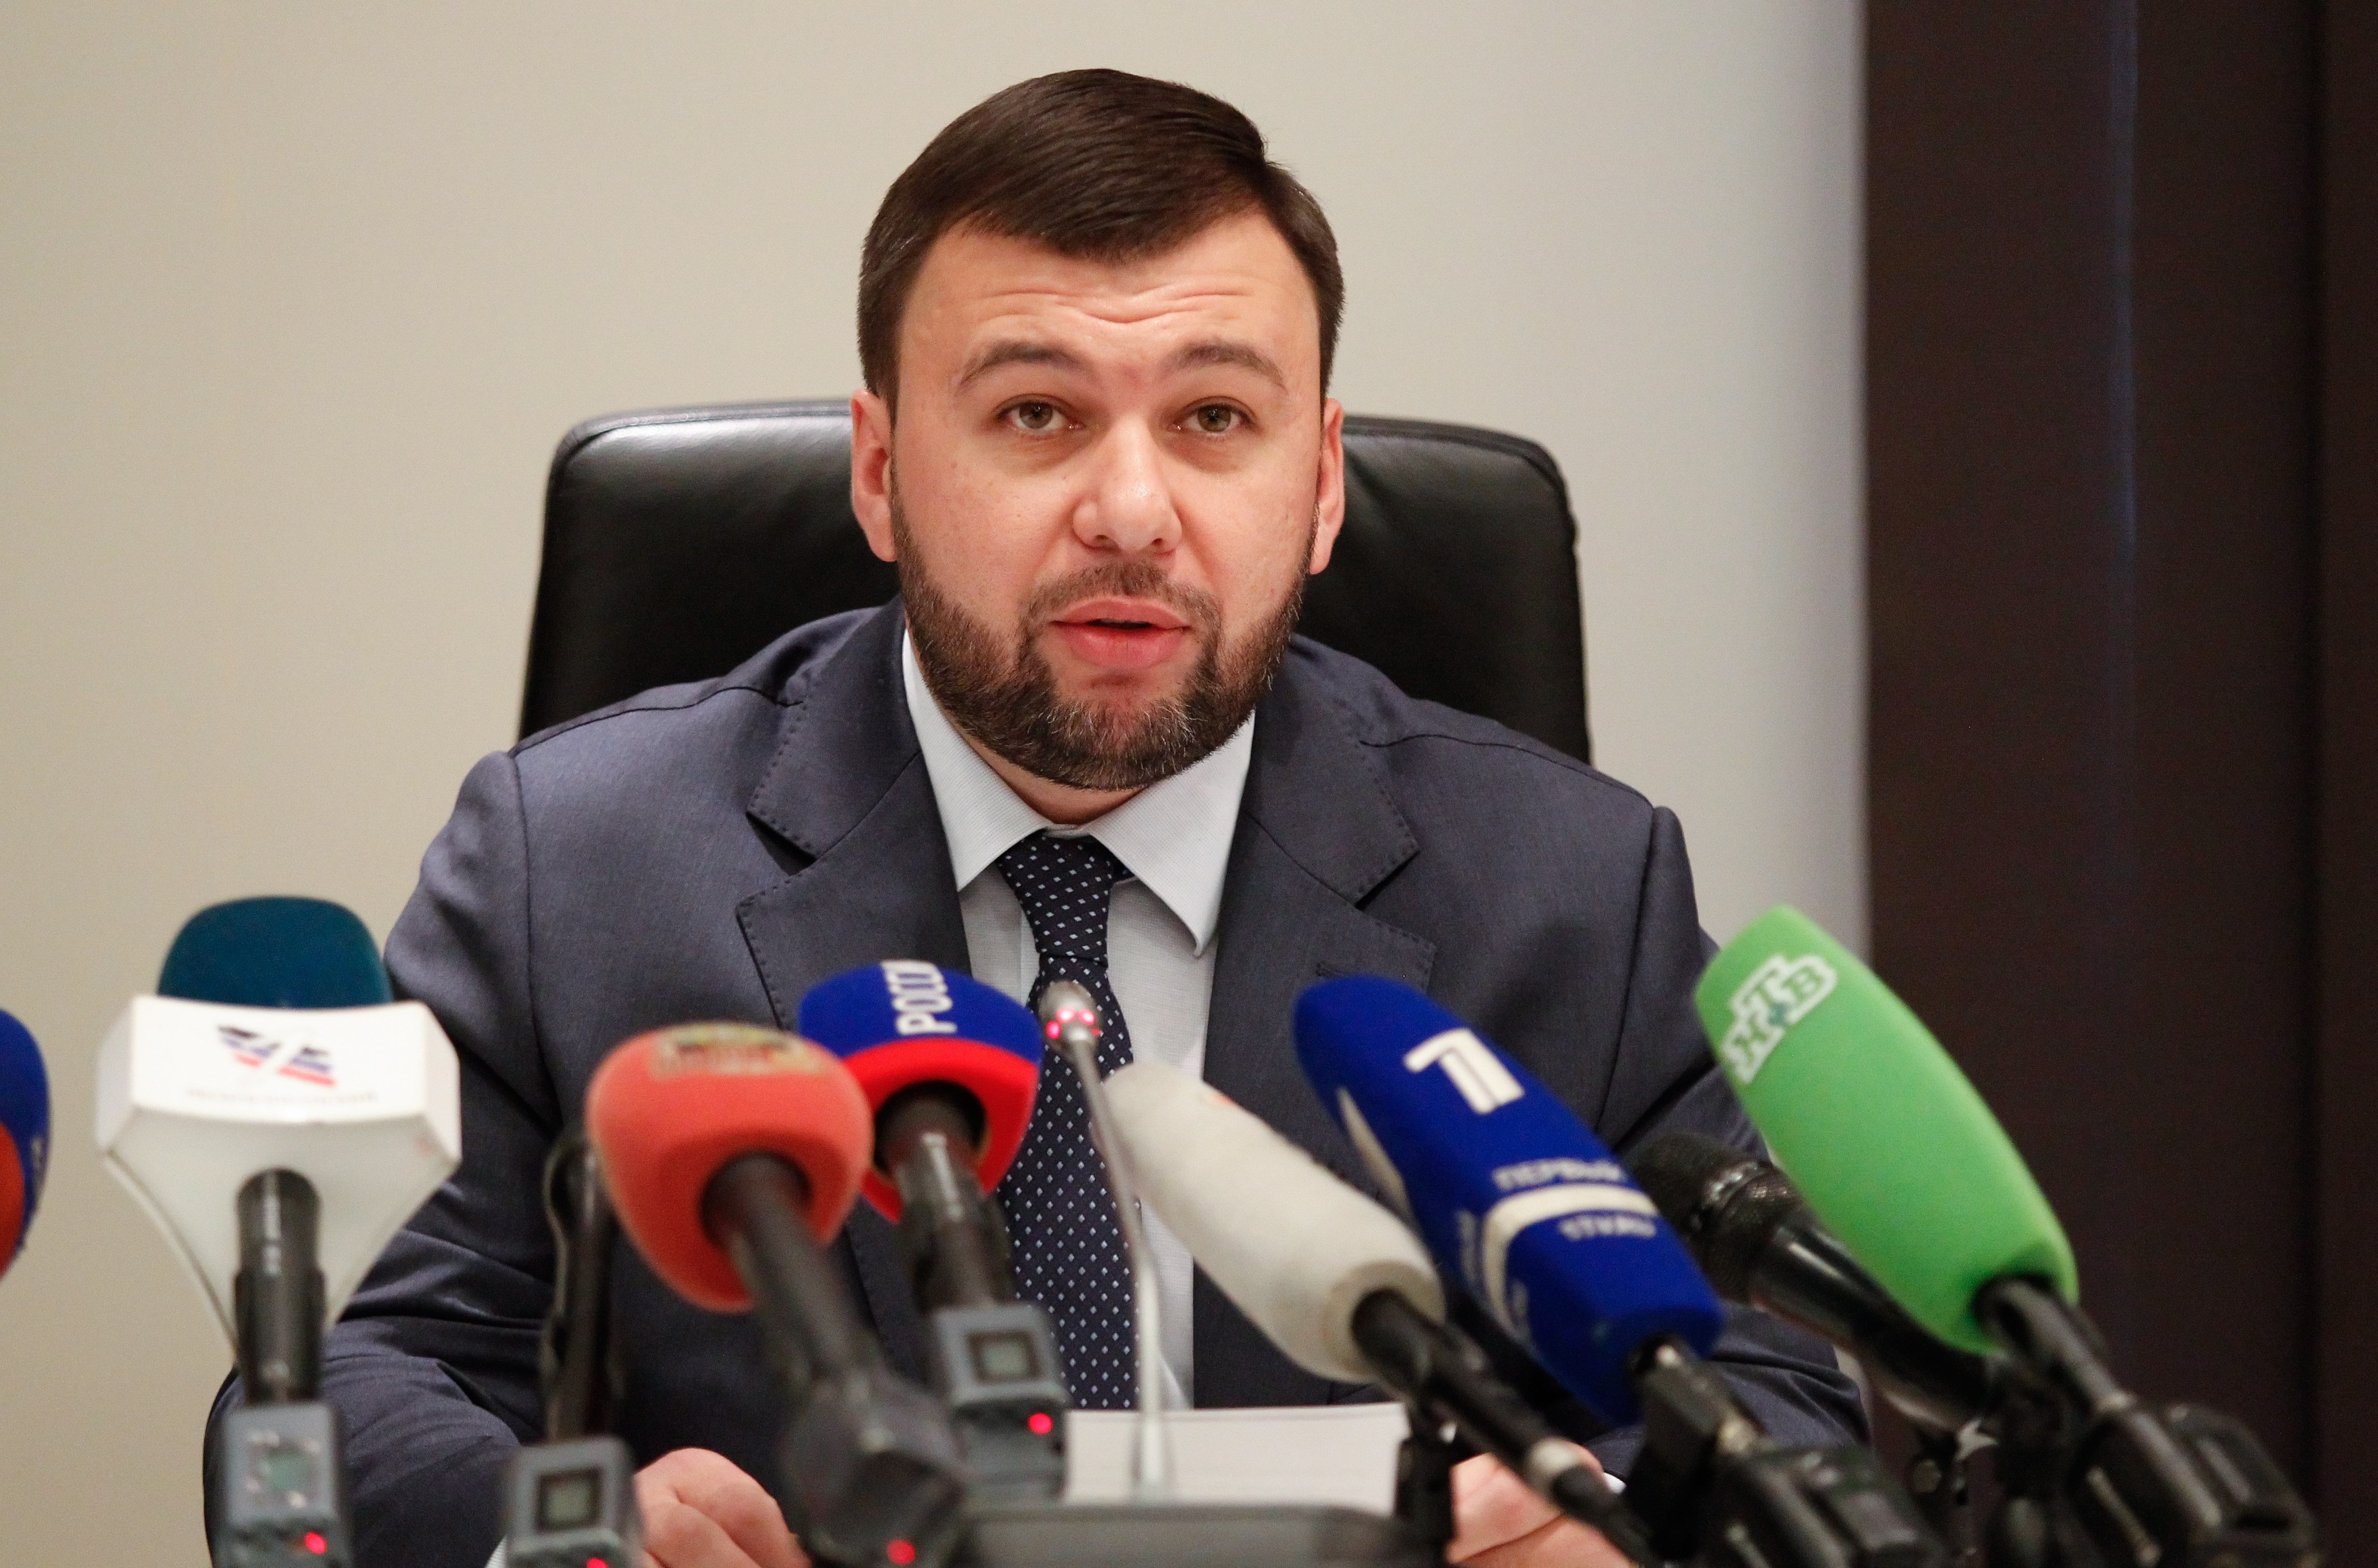 El líder prorruso del Donbás declara la movilización militar total